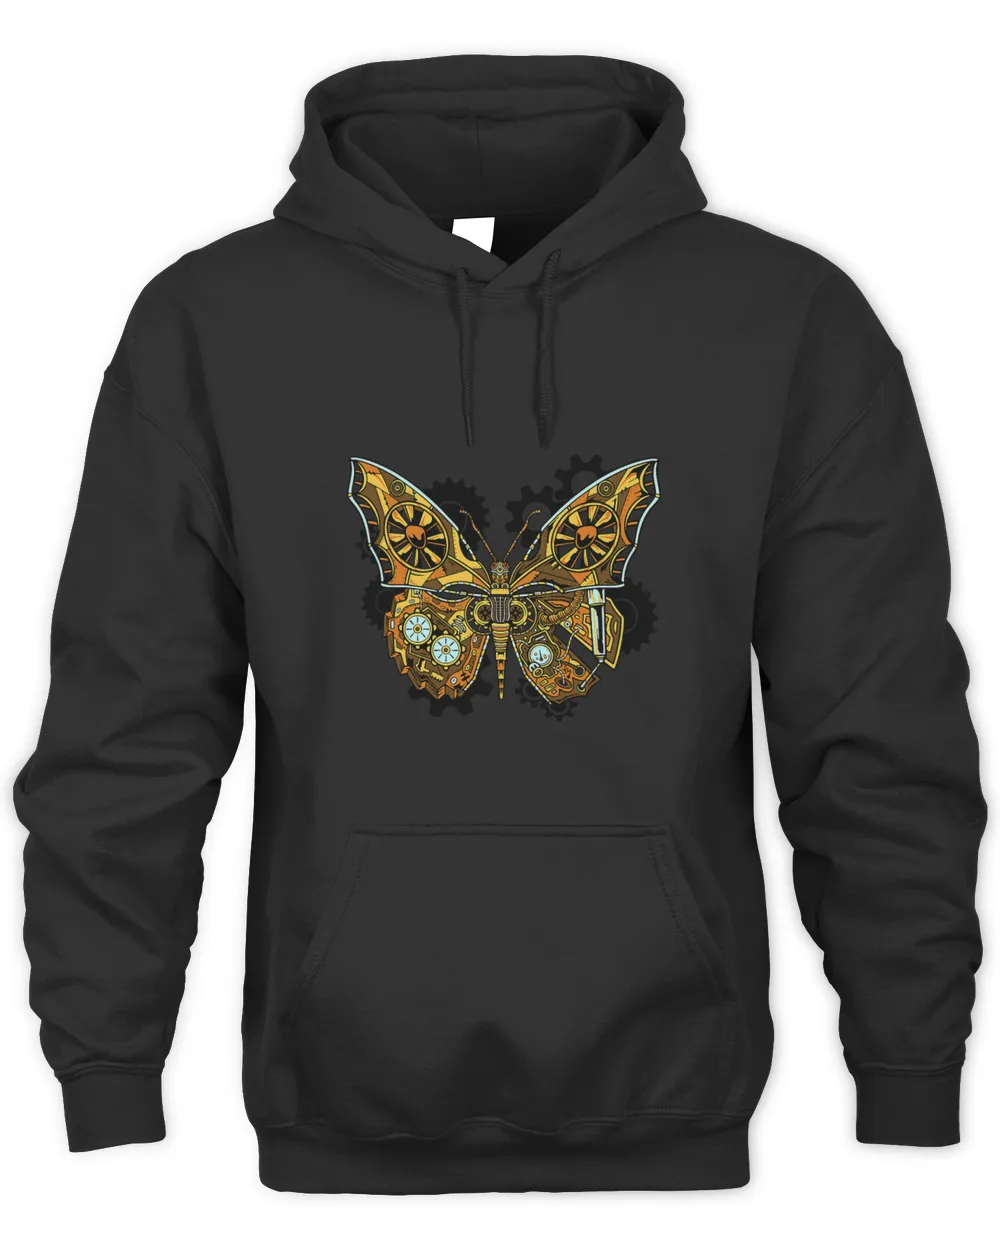 Steampunk Mechanical Butterfly Wings Butterflies Gears Cogs